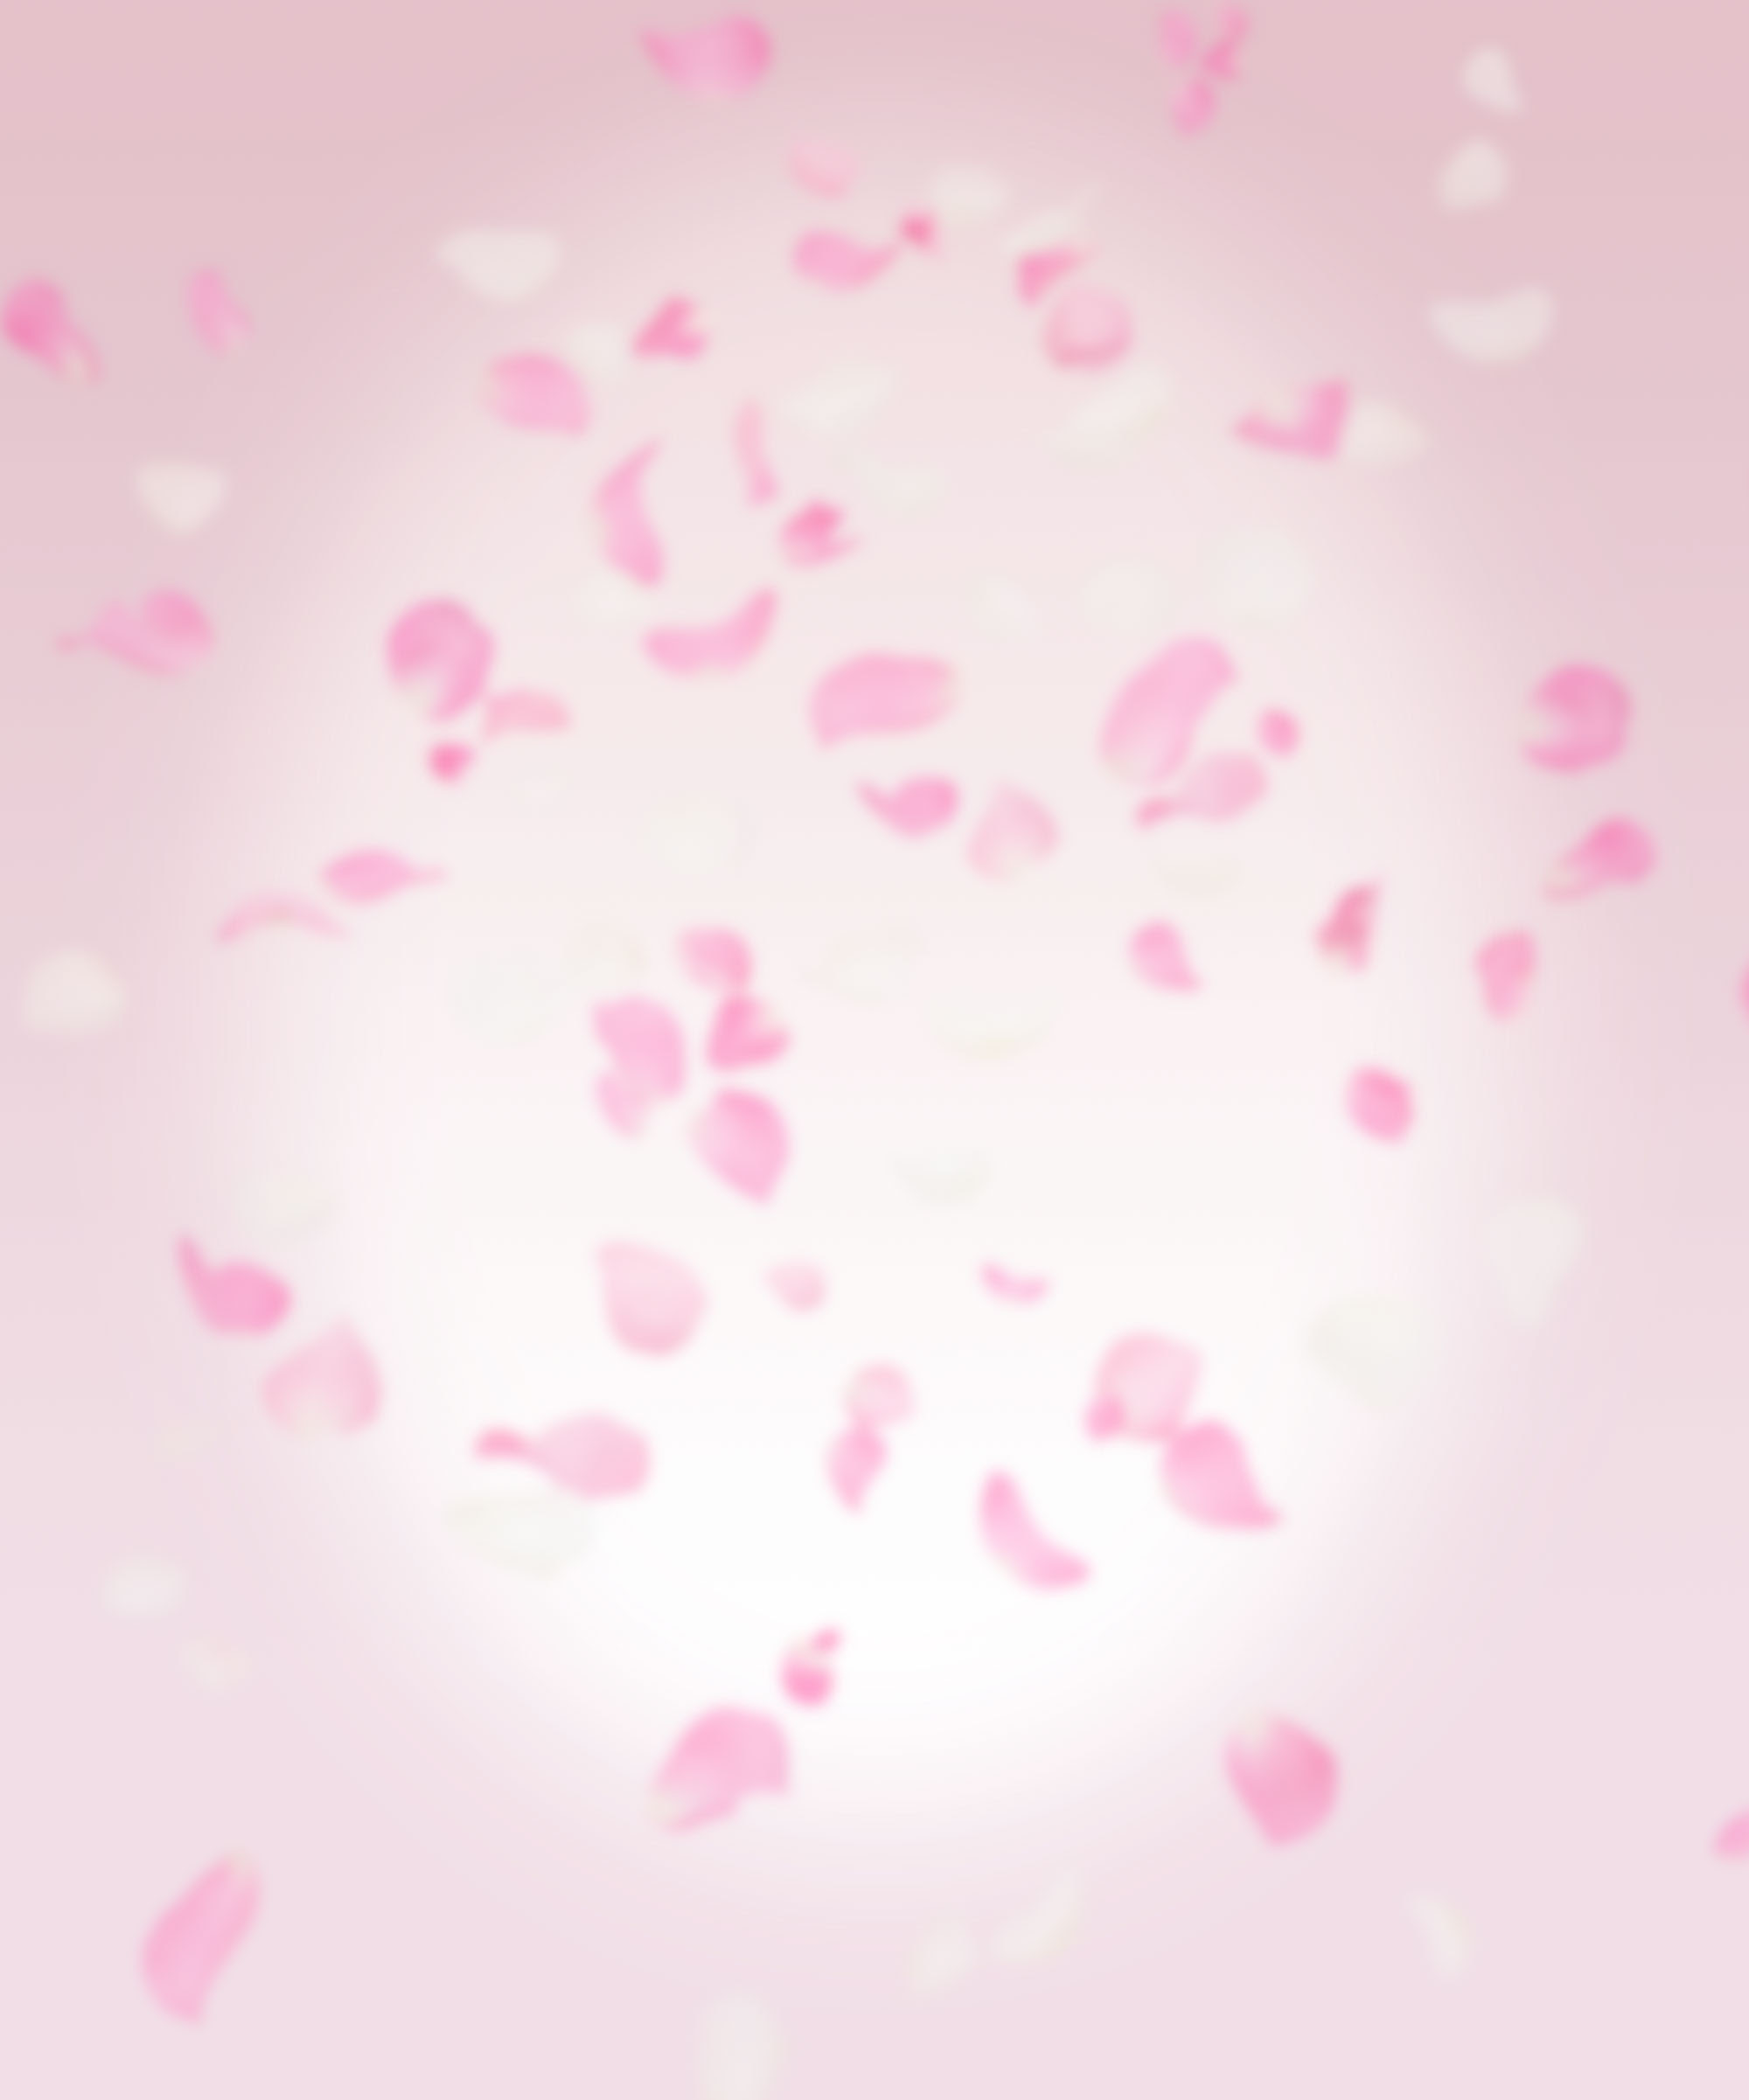 ラブリーiphone 桜吹雪 壁紙 すべての美しい花の画像